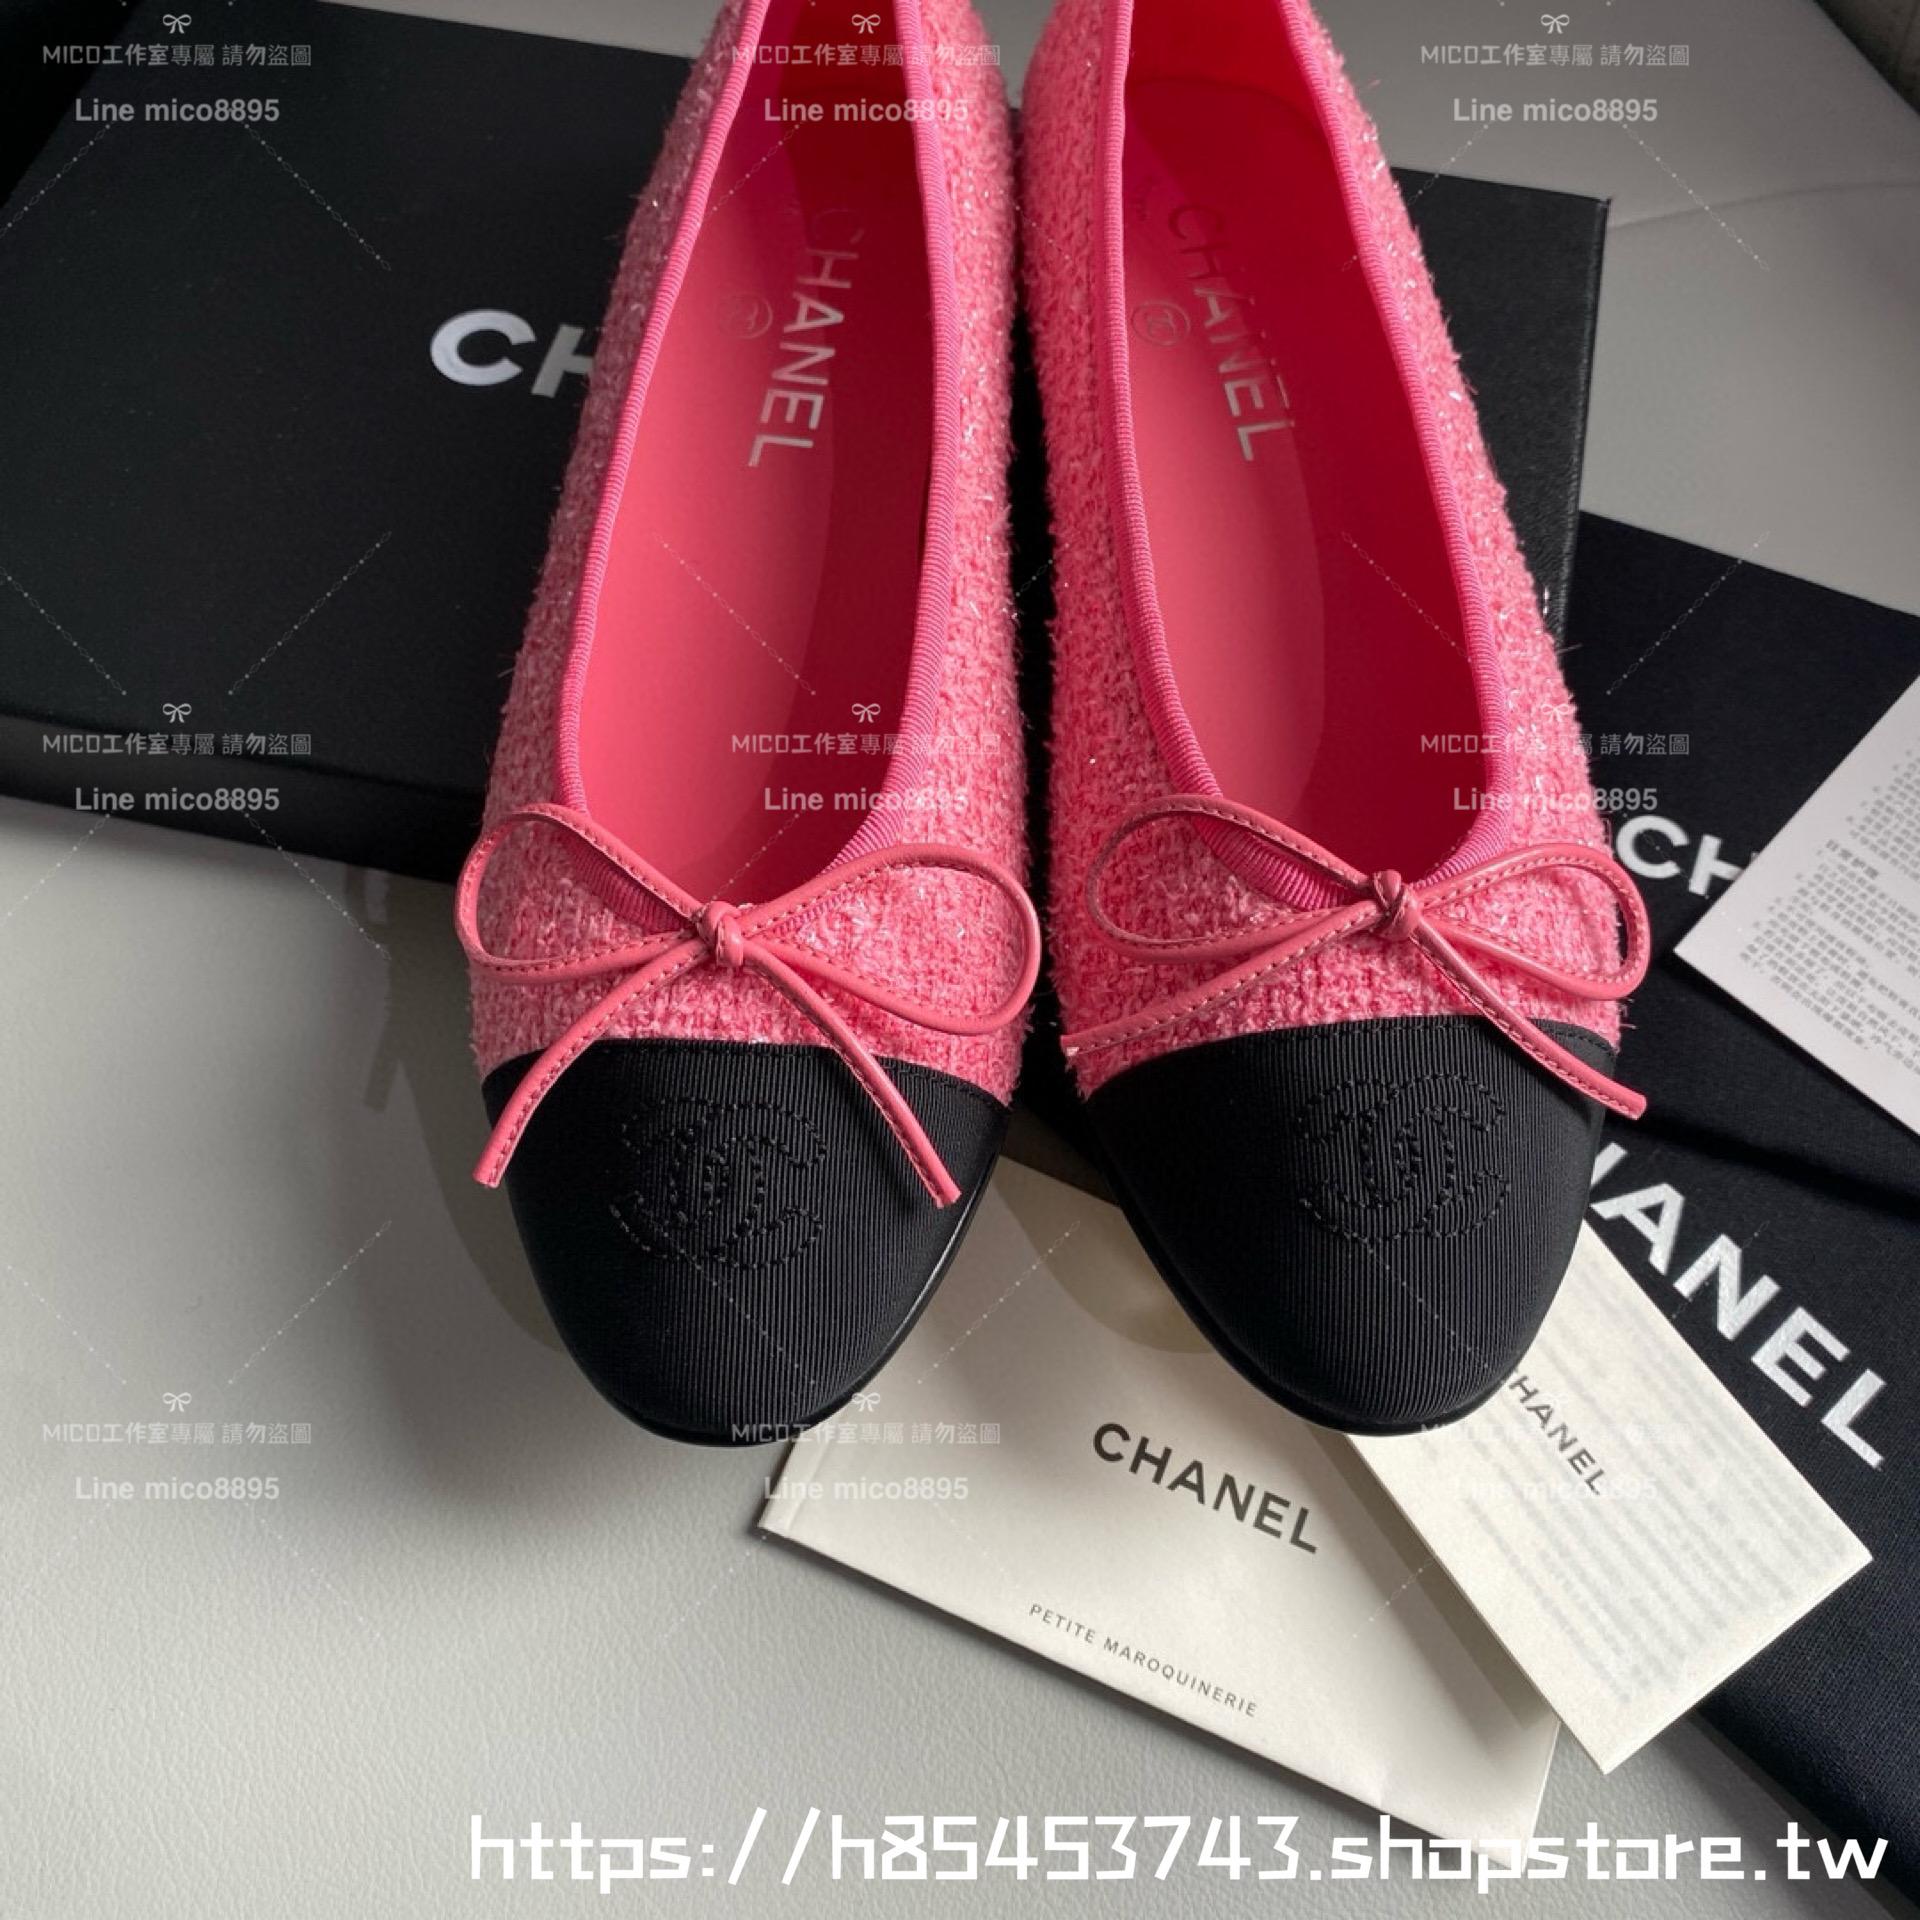 CHANEL 小香 經典款芭蕾舞鞋 桃粉色毛呢 平底鞋/女鞋 Size：35-39（34.40.41.42定做不退换）